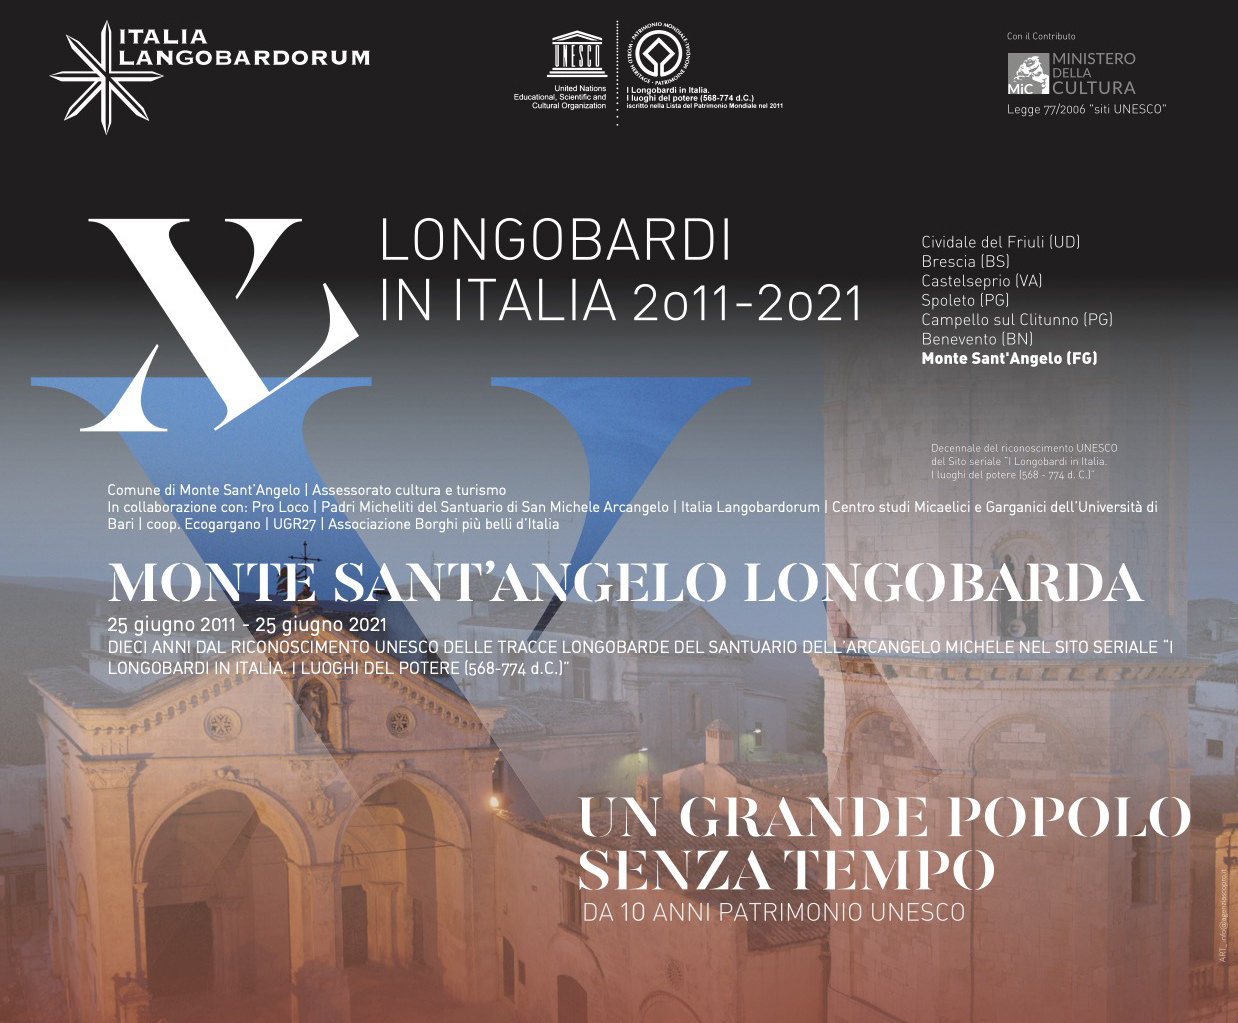 Monte Sant'Angelo, 10 anni dal riconoscimento UNESCO: eventi e serate culturali